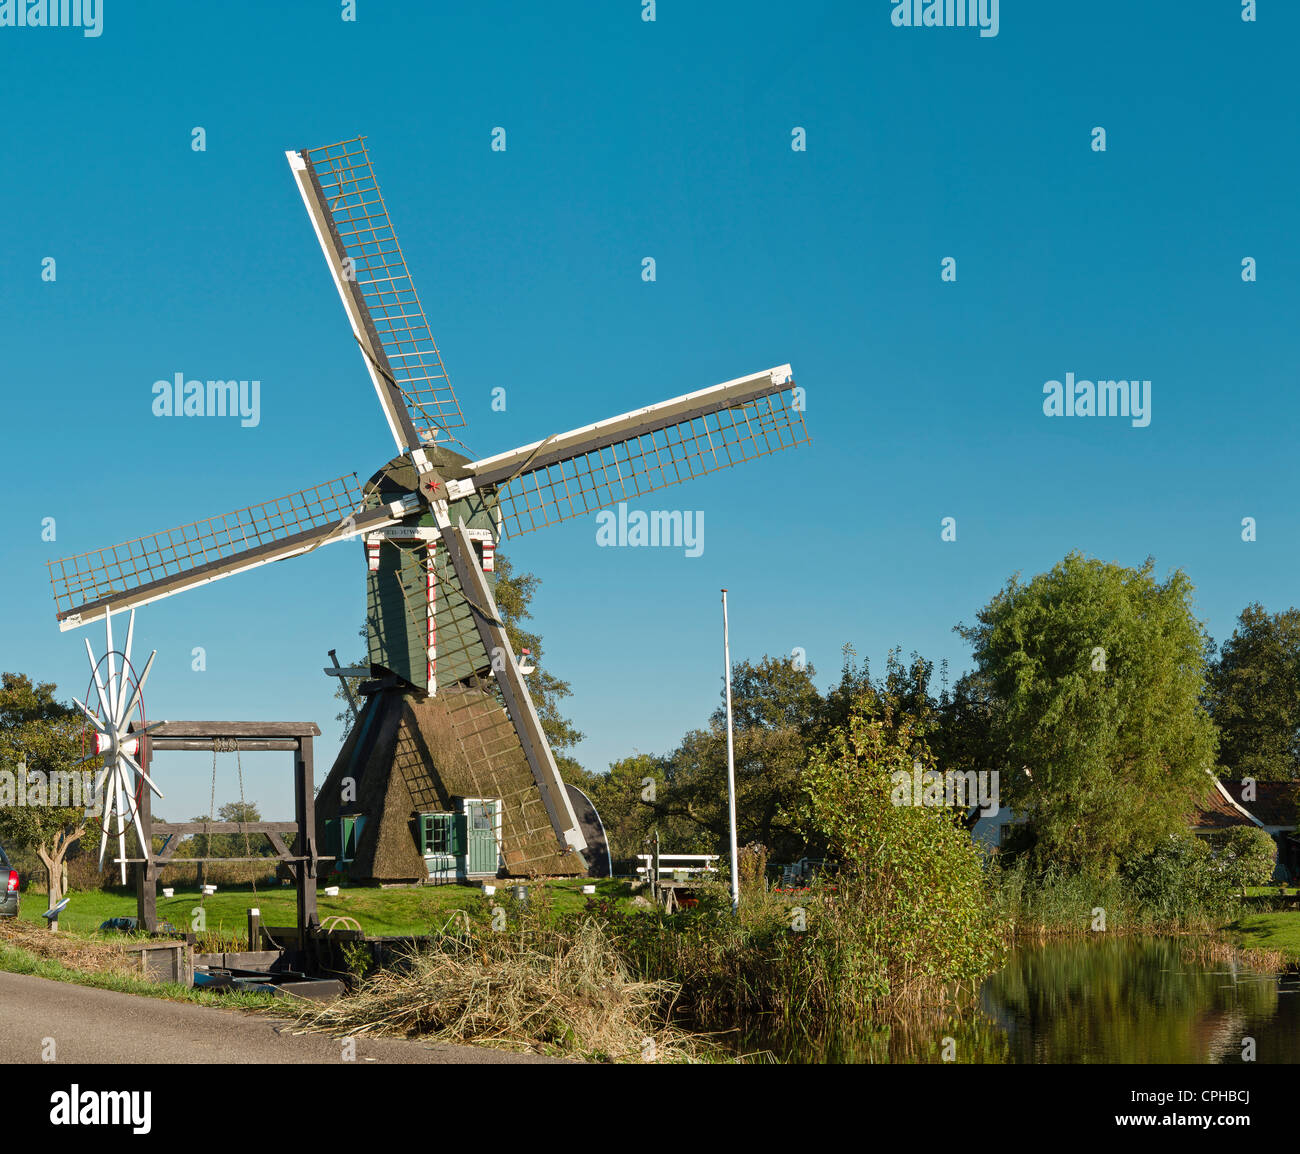 Países Bajos, Holanda, Europa, Tienhoven, molino de viento, bosque, madera, árboles, otoño, Smock windmill, Smock, De Trouwe Waghter Foto de stock